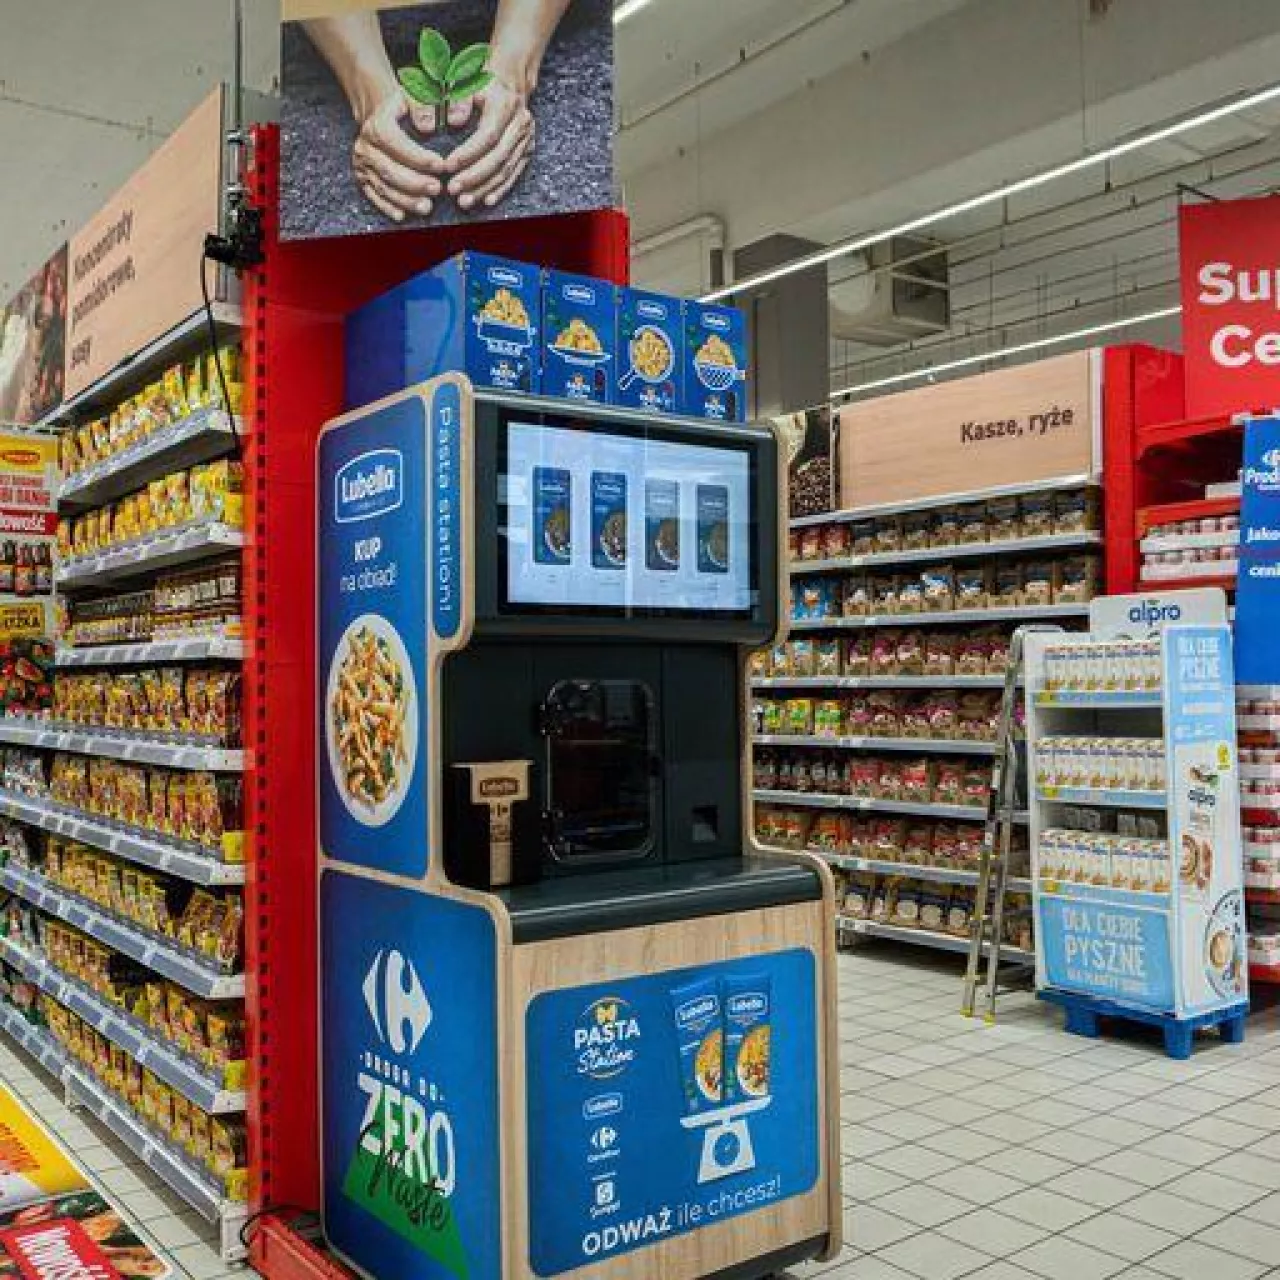 Maspex wprowadził do sklepu Carrefour Arkadia w Warszawie refillomat pozwalający kupować makaron marki Lubella do własnych opakowań (fot. mat. pras.)